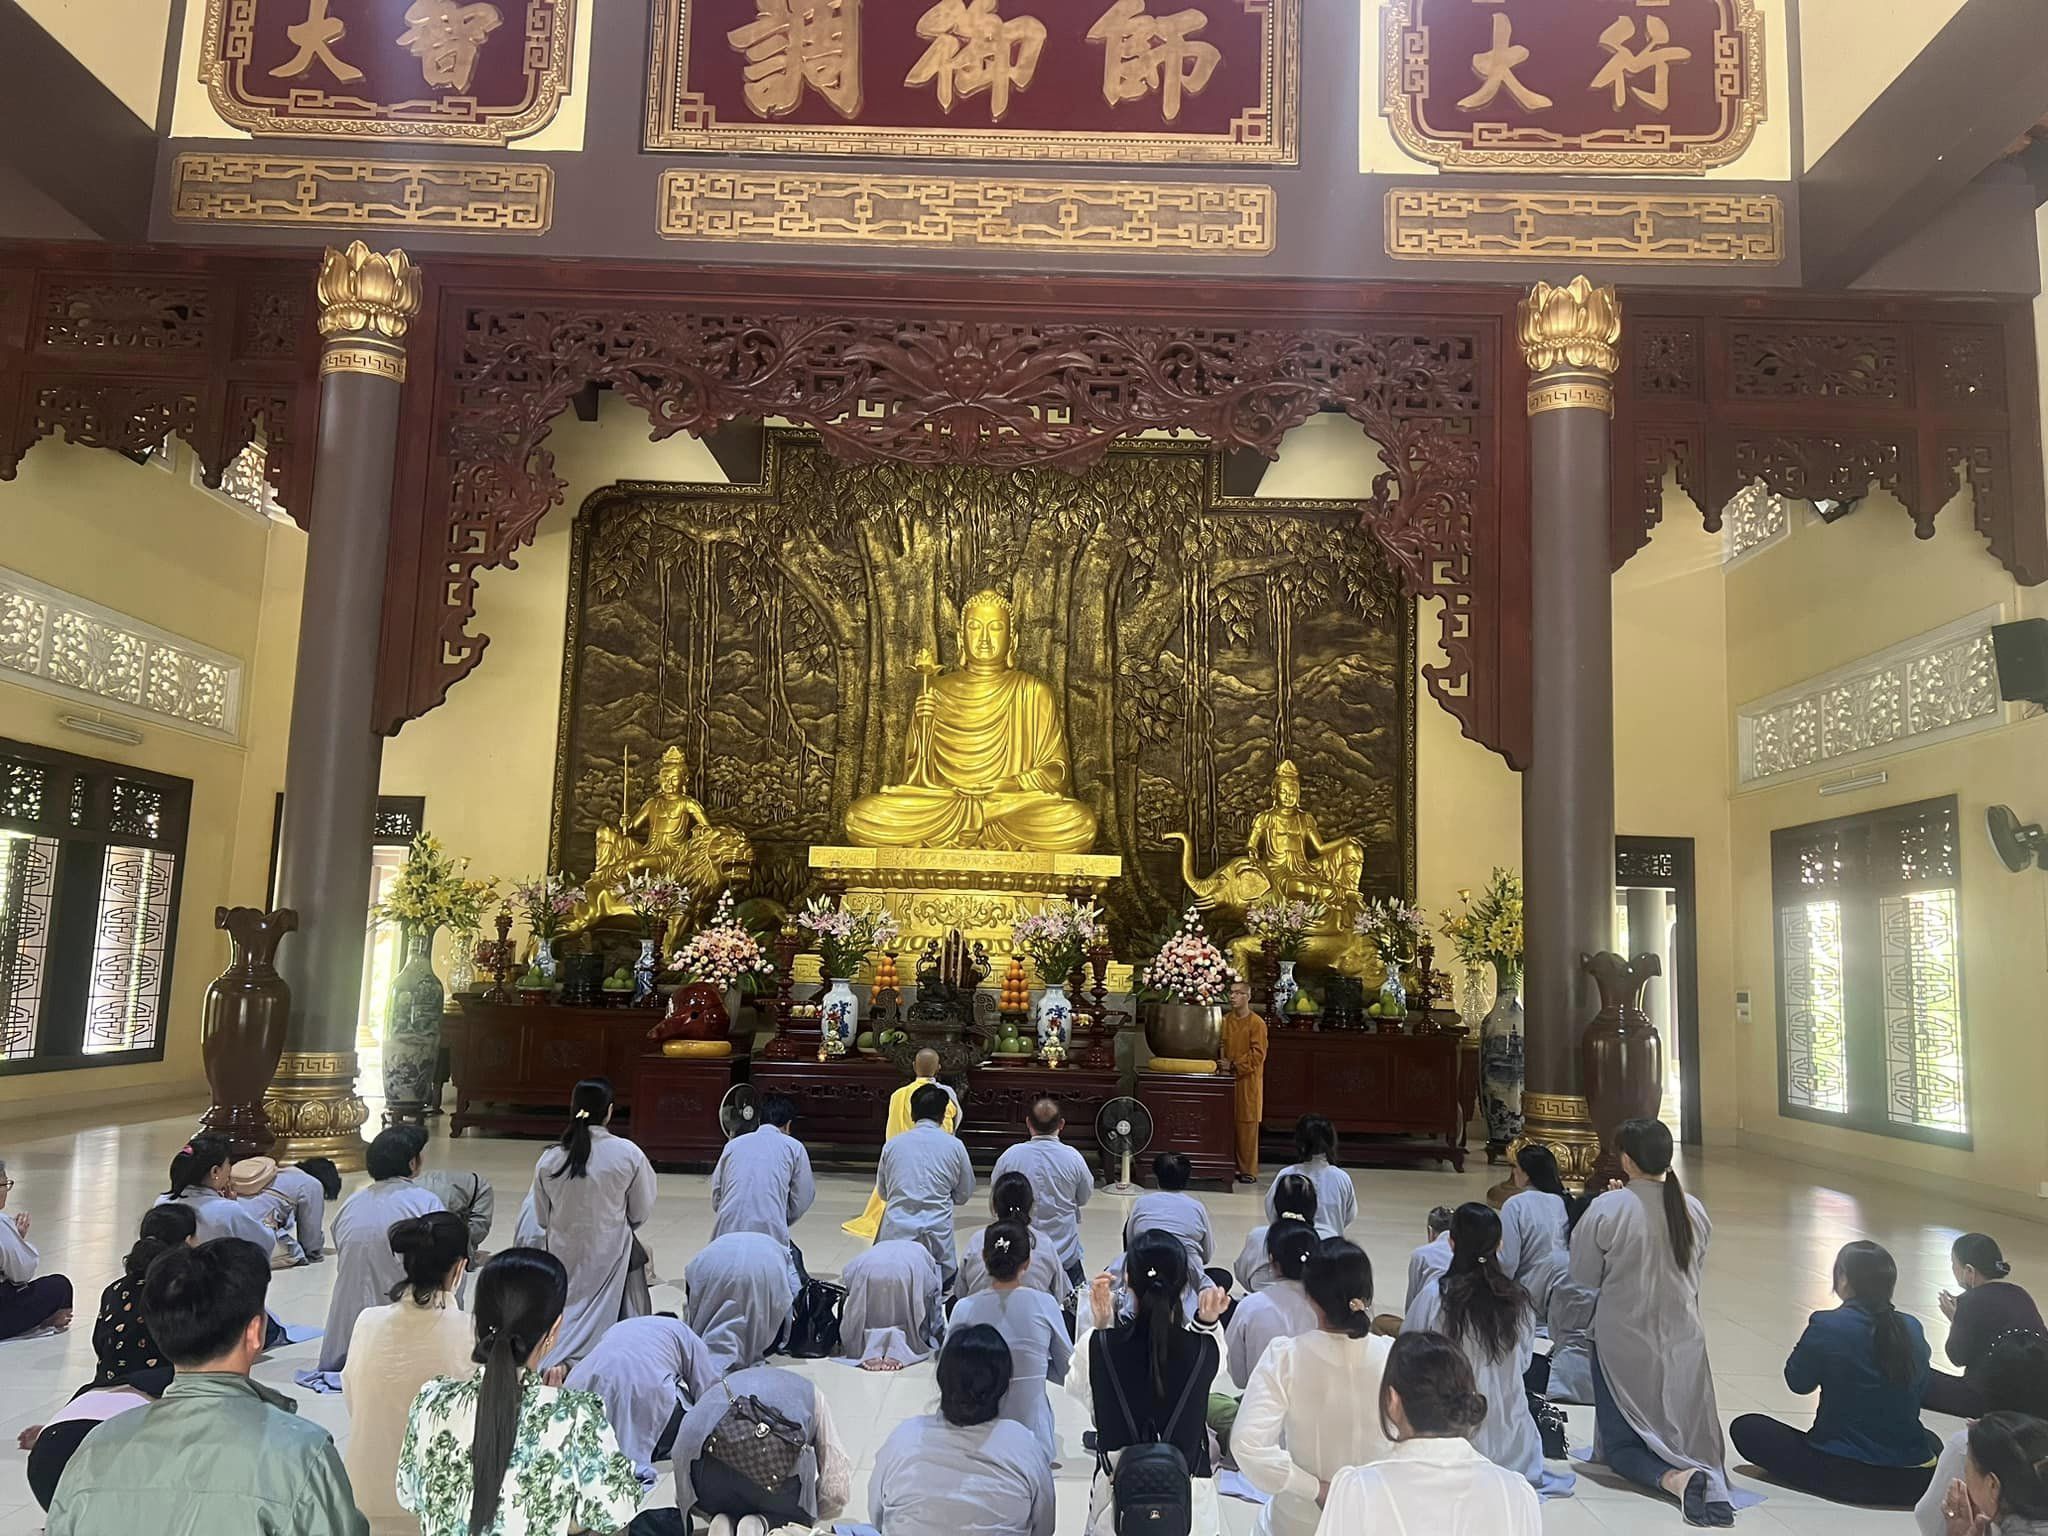 chùa linh thiêng tại Long Hải